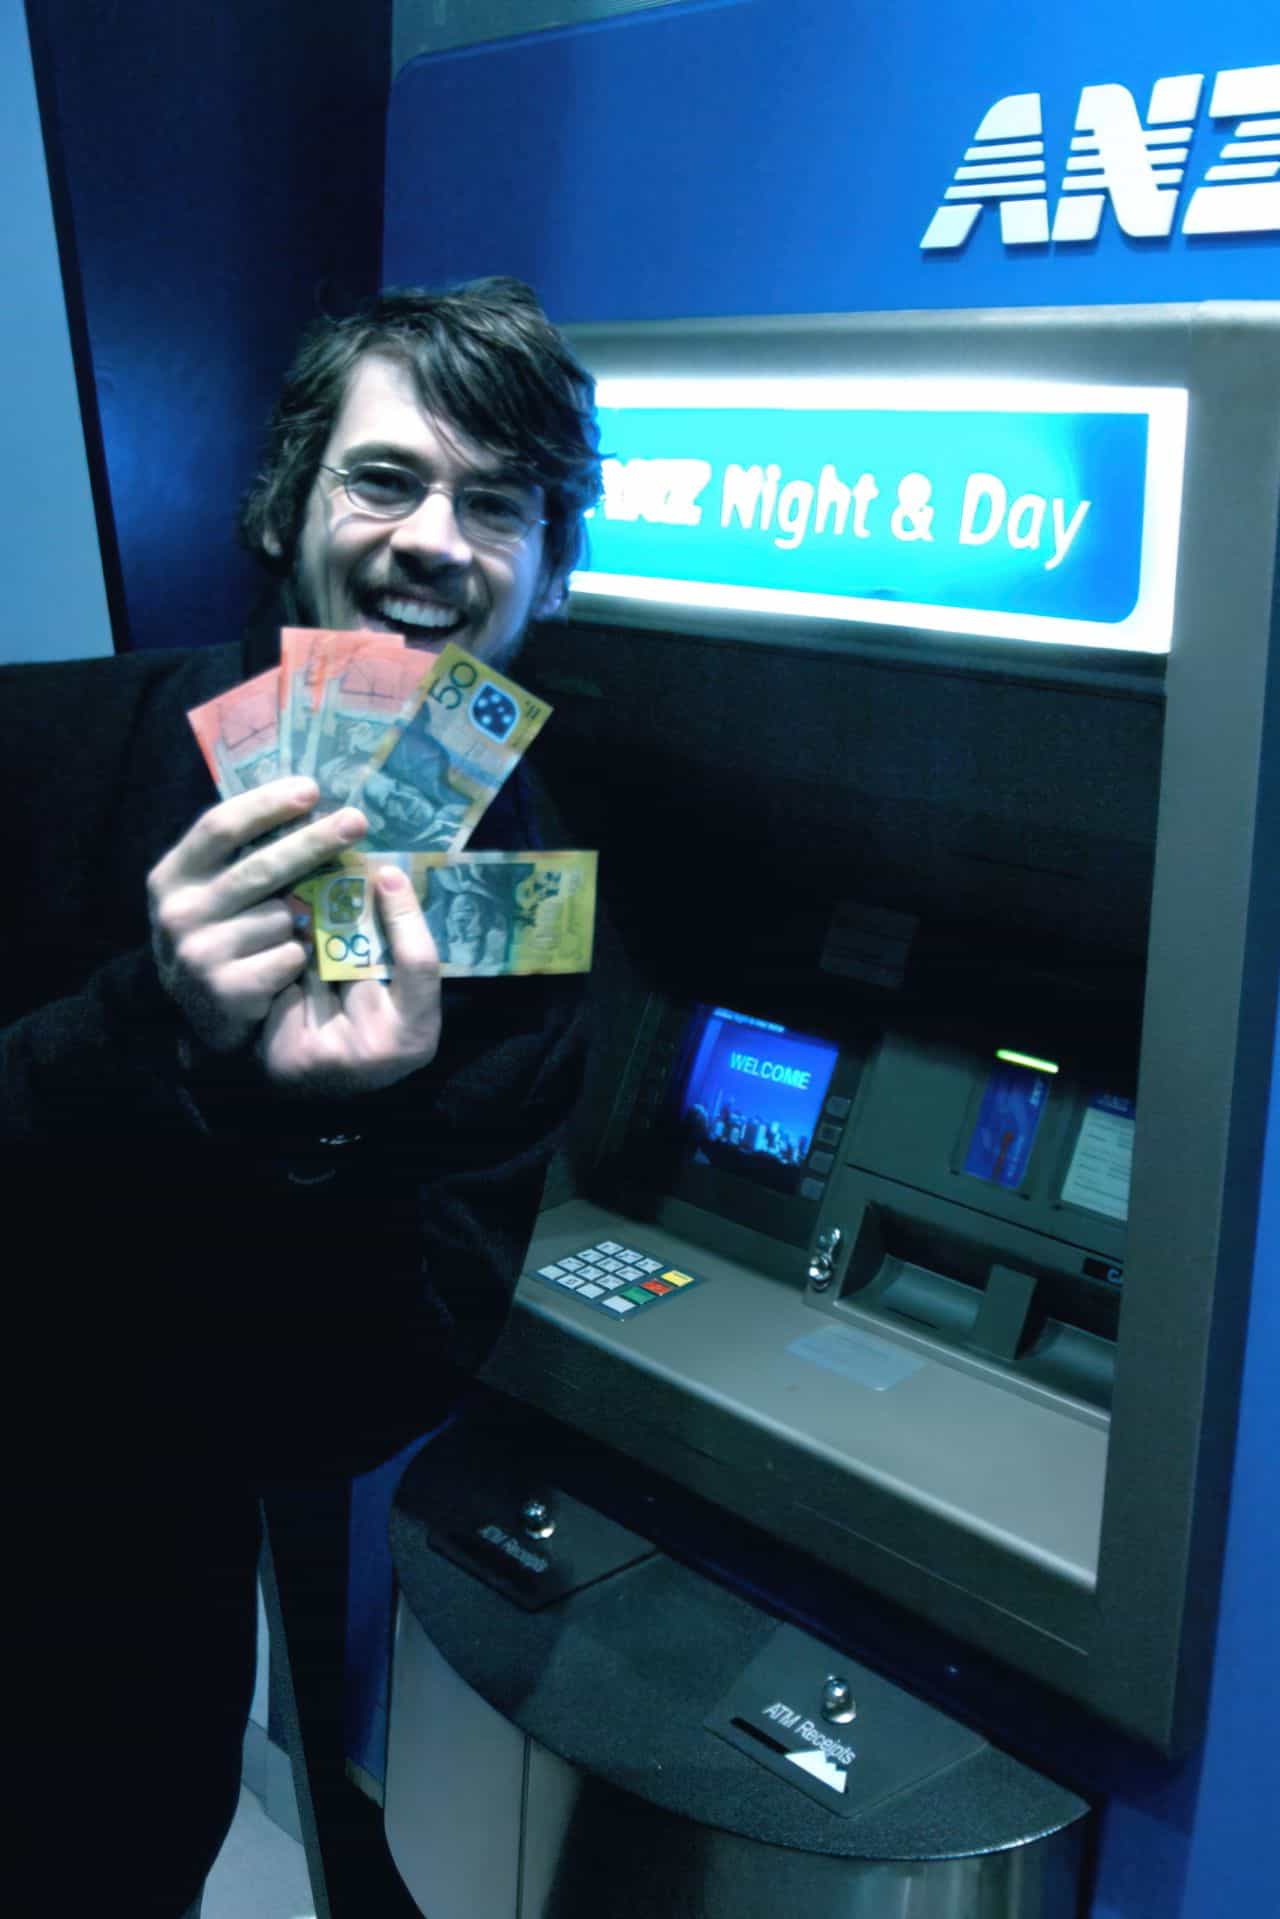 man holding cash smiling